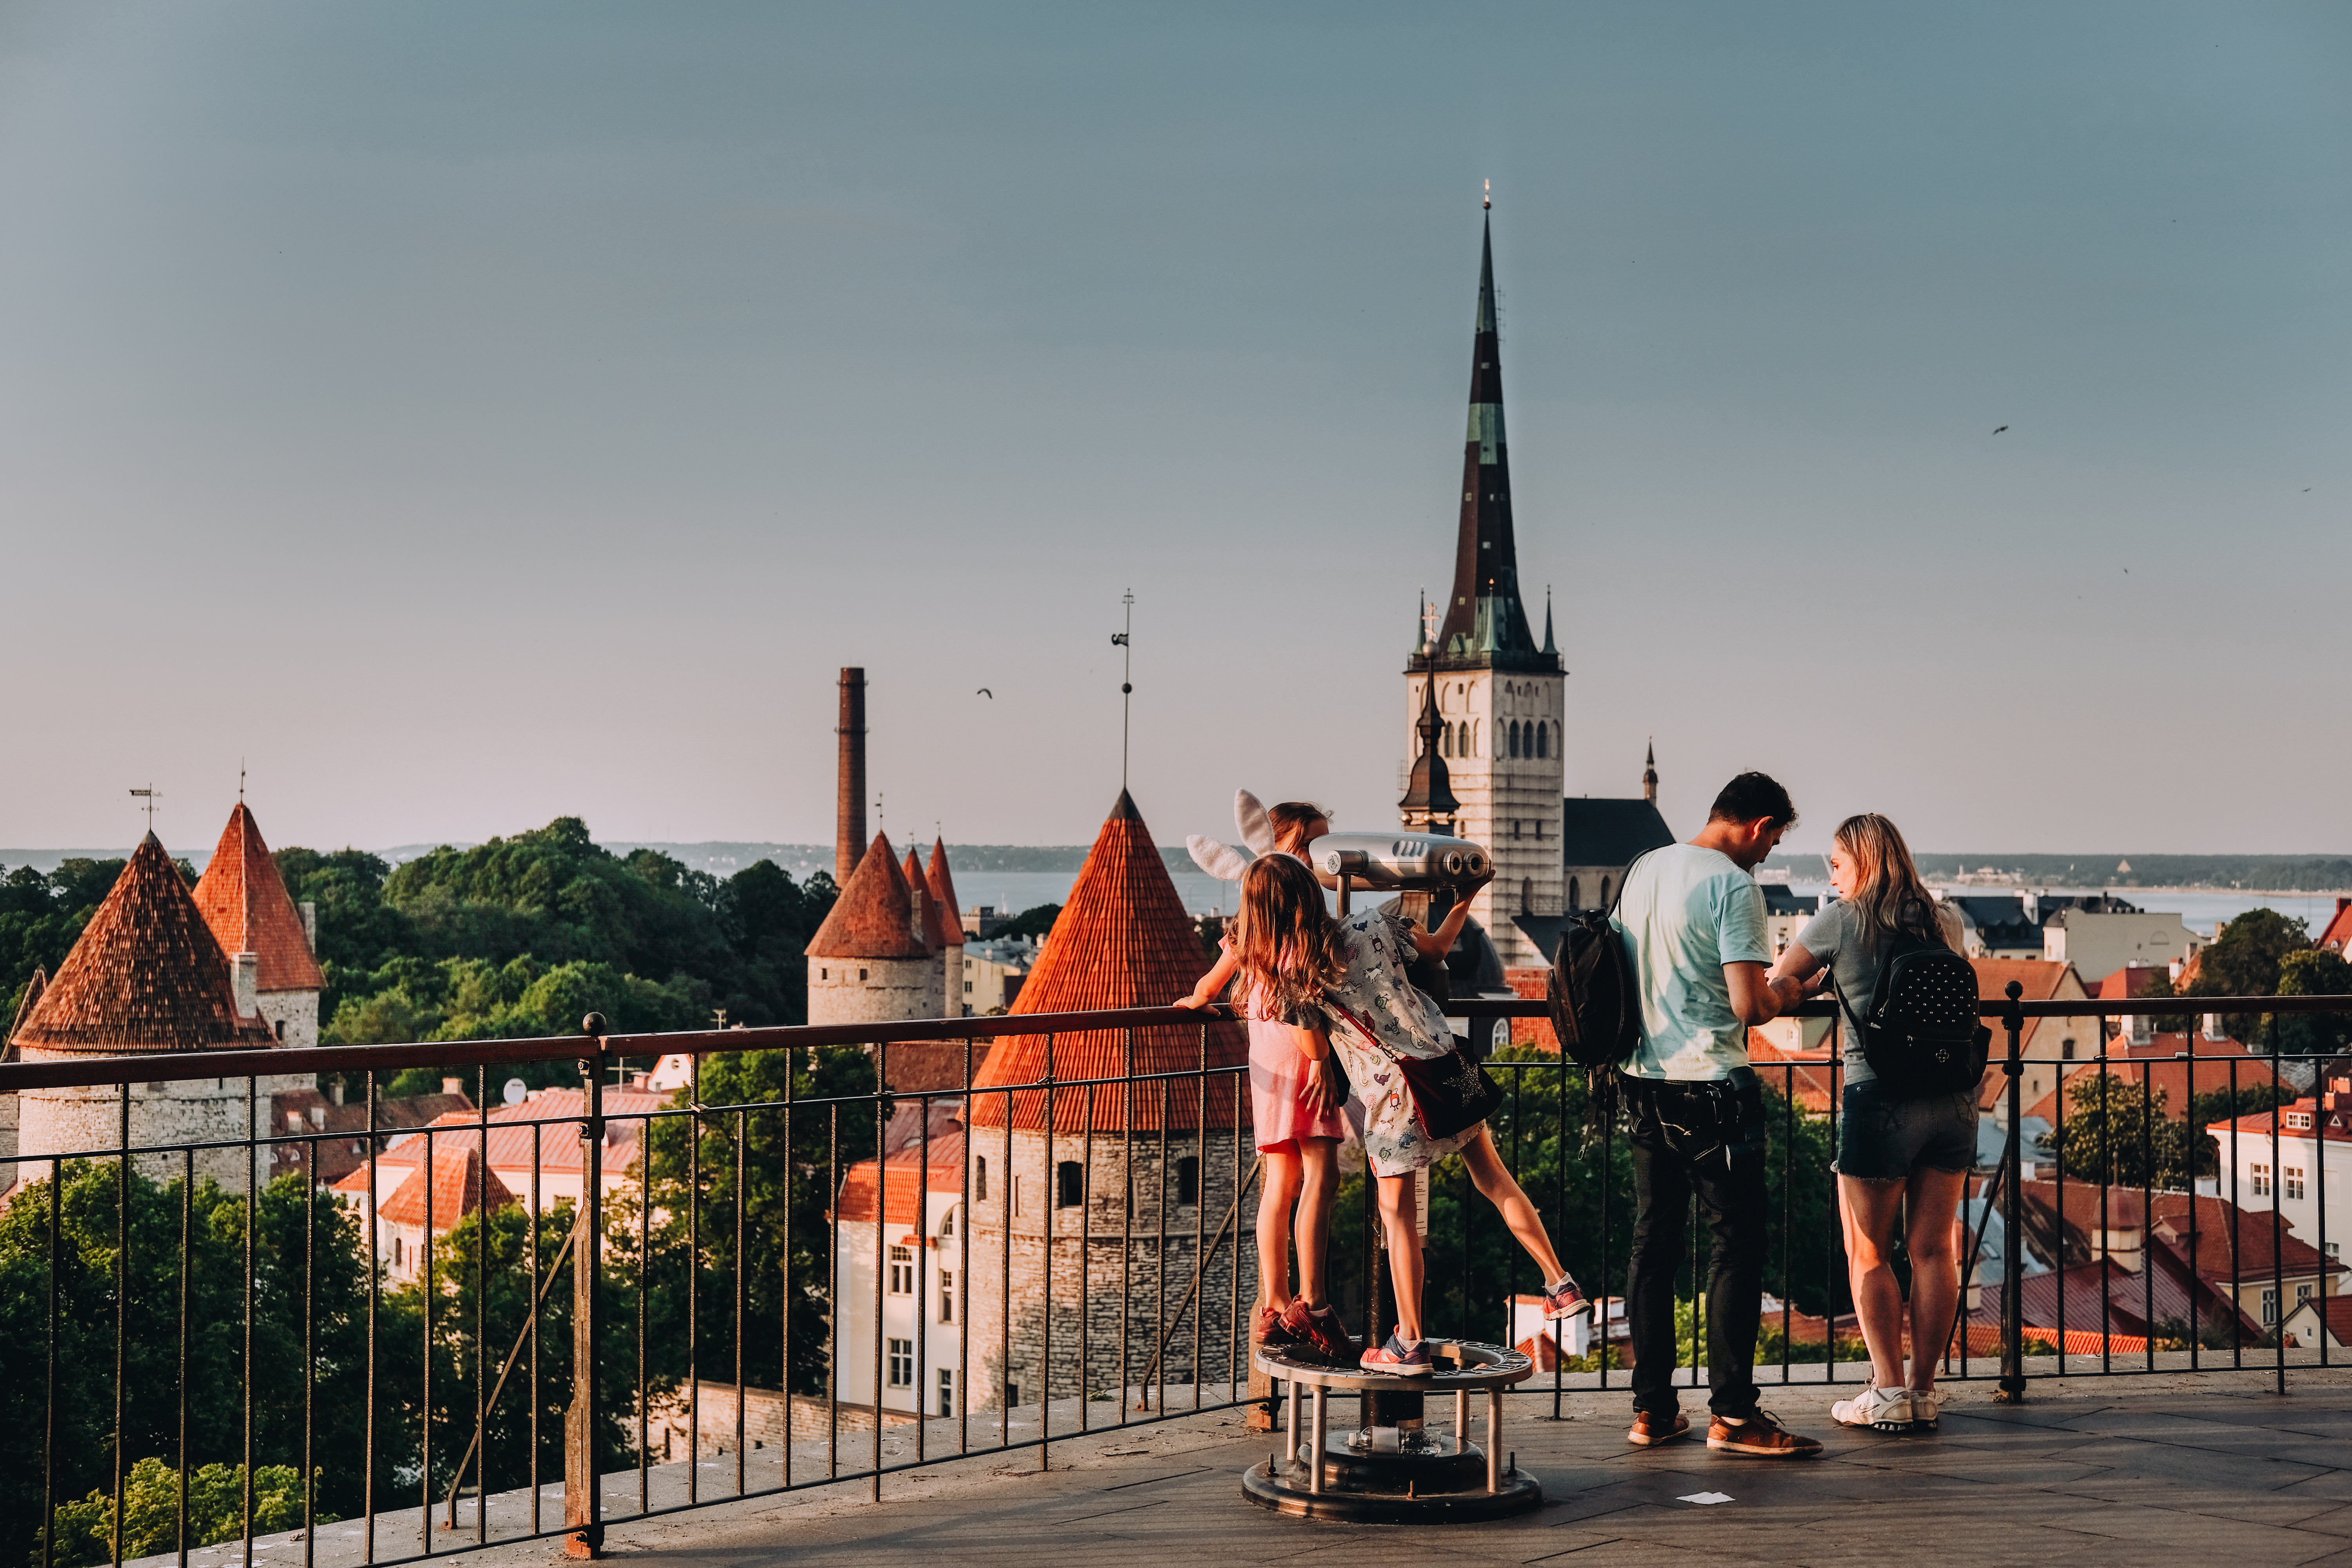 Menschen auf der Aussichtsplattform Patkul in Toompea, Tallinn, an einem Sommerabend, mit den Türmen der Stadtmauer und der Oleviste-Kirche im Hintergrund.